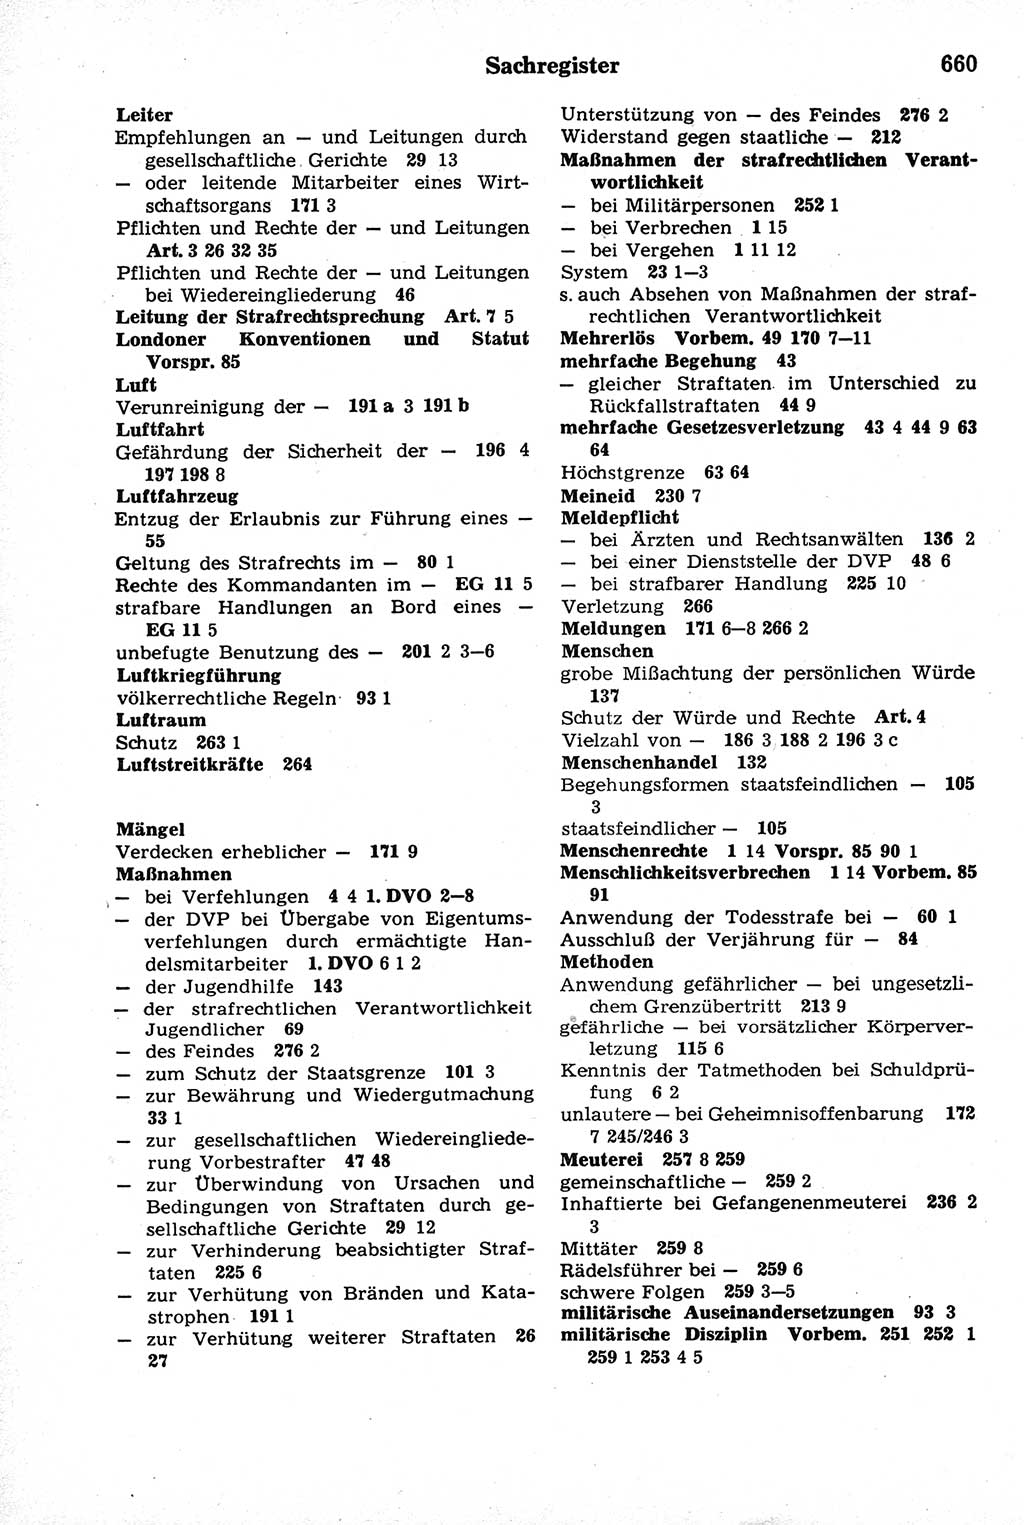 Strafrecht der Deutschen Demokratischen Republik (DDR), Kommentar zum Strafgesetzbuch (StGB) 1981, Seite 660 (Strafr. DDR Komm. StGB 1981, S. 660)